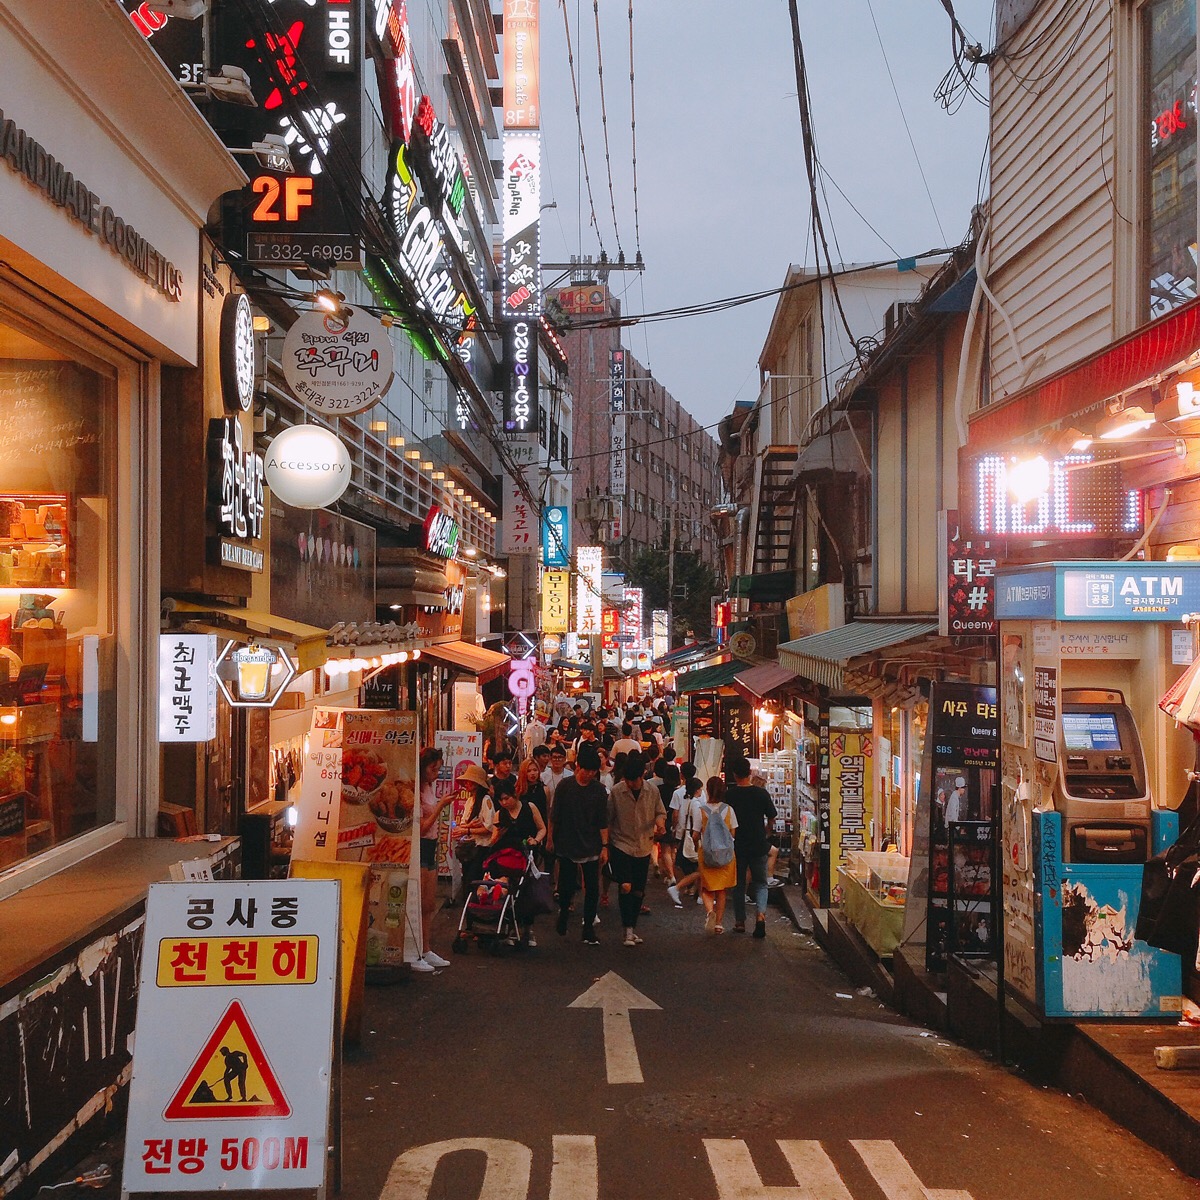 韩国这样的街头还挺多的,也是特色吧.